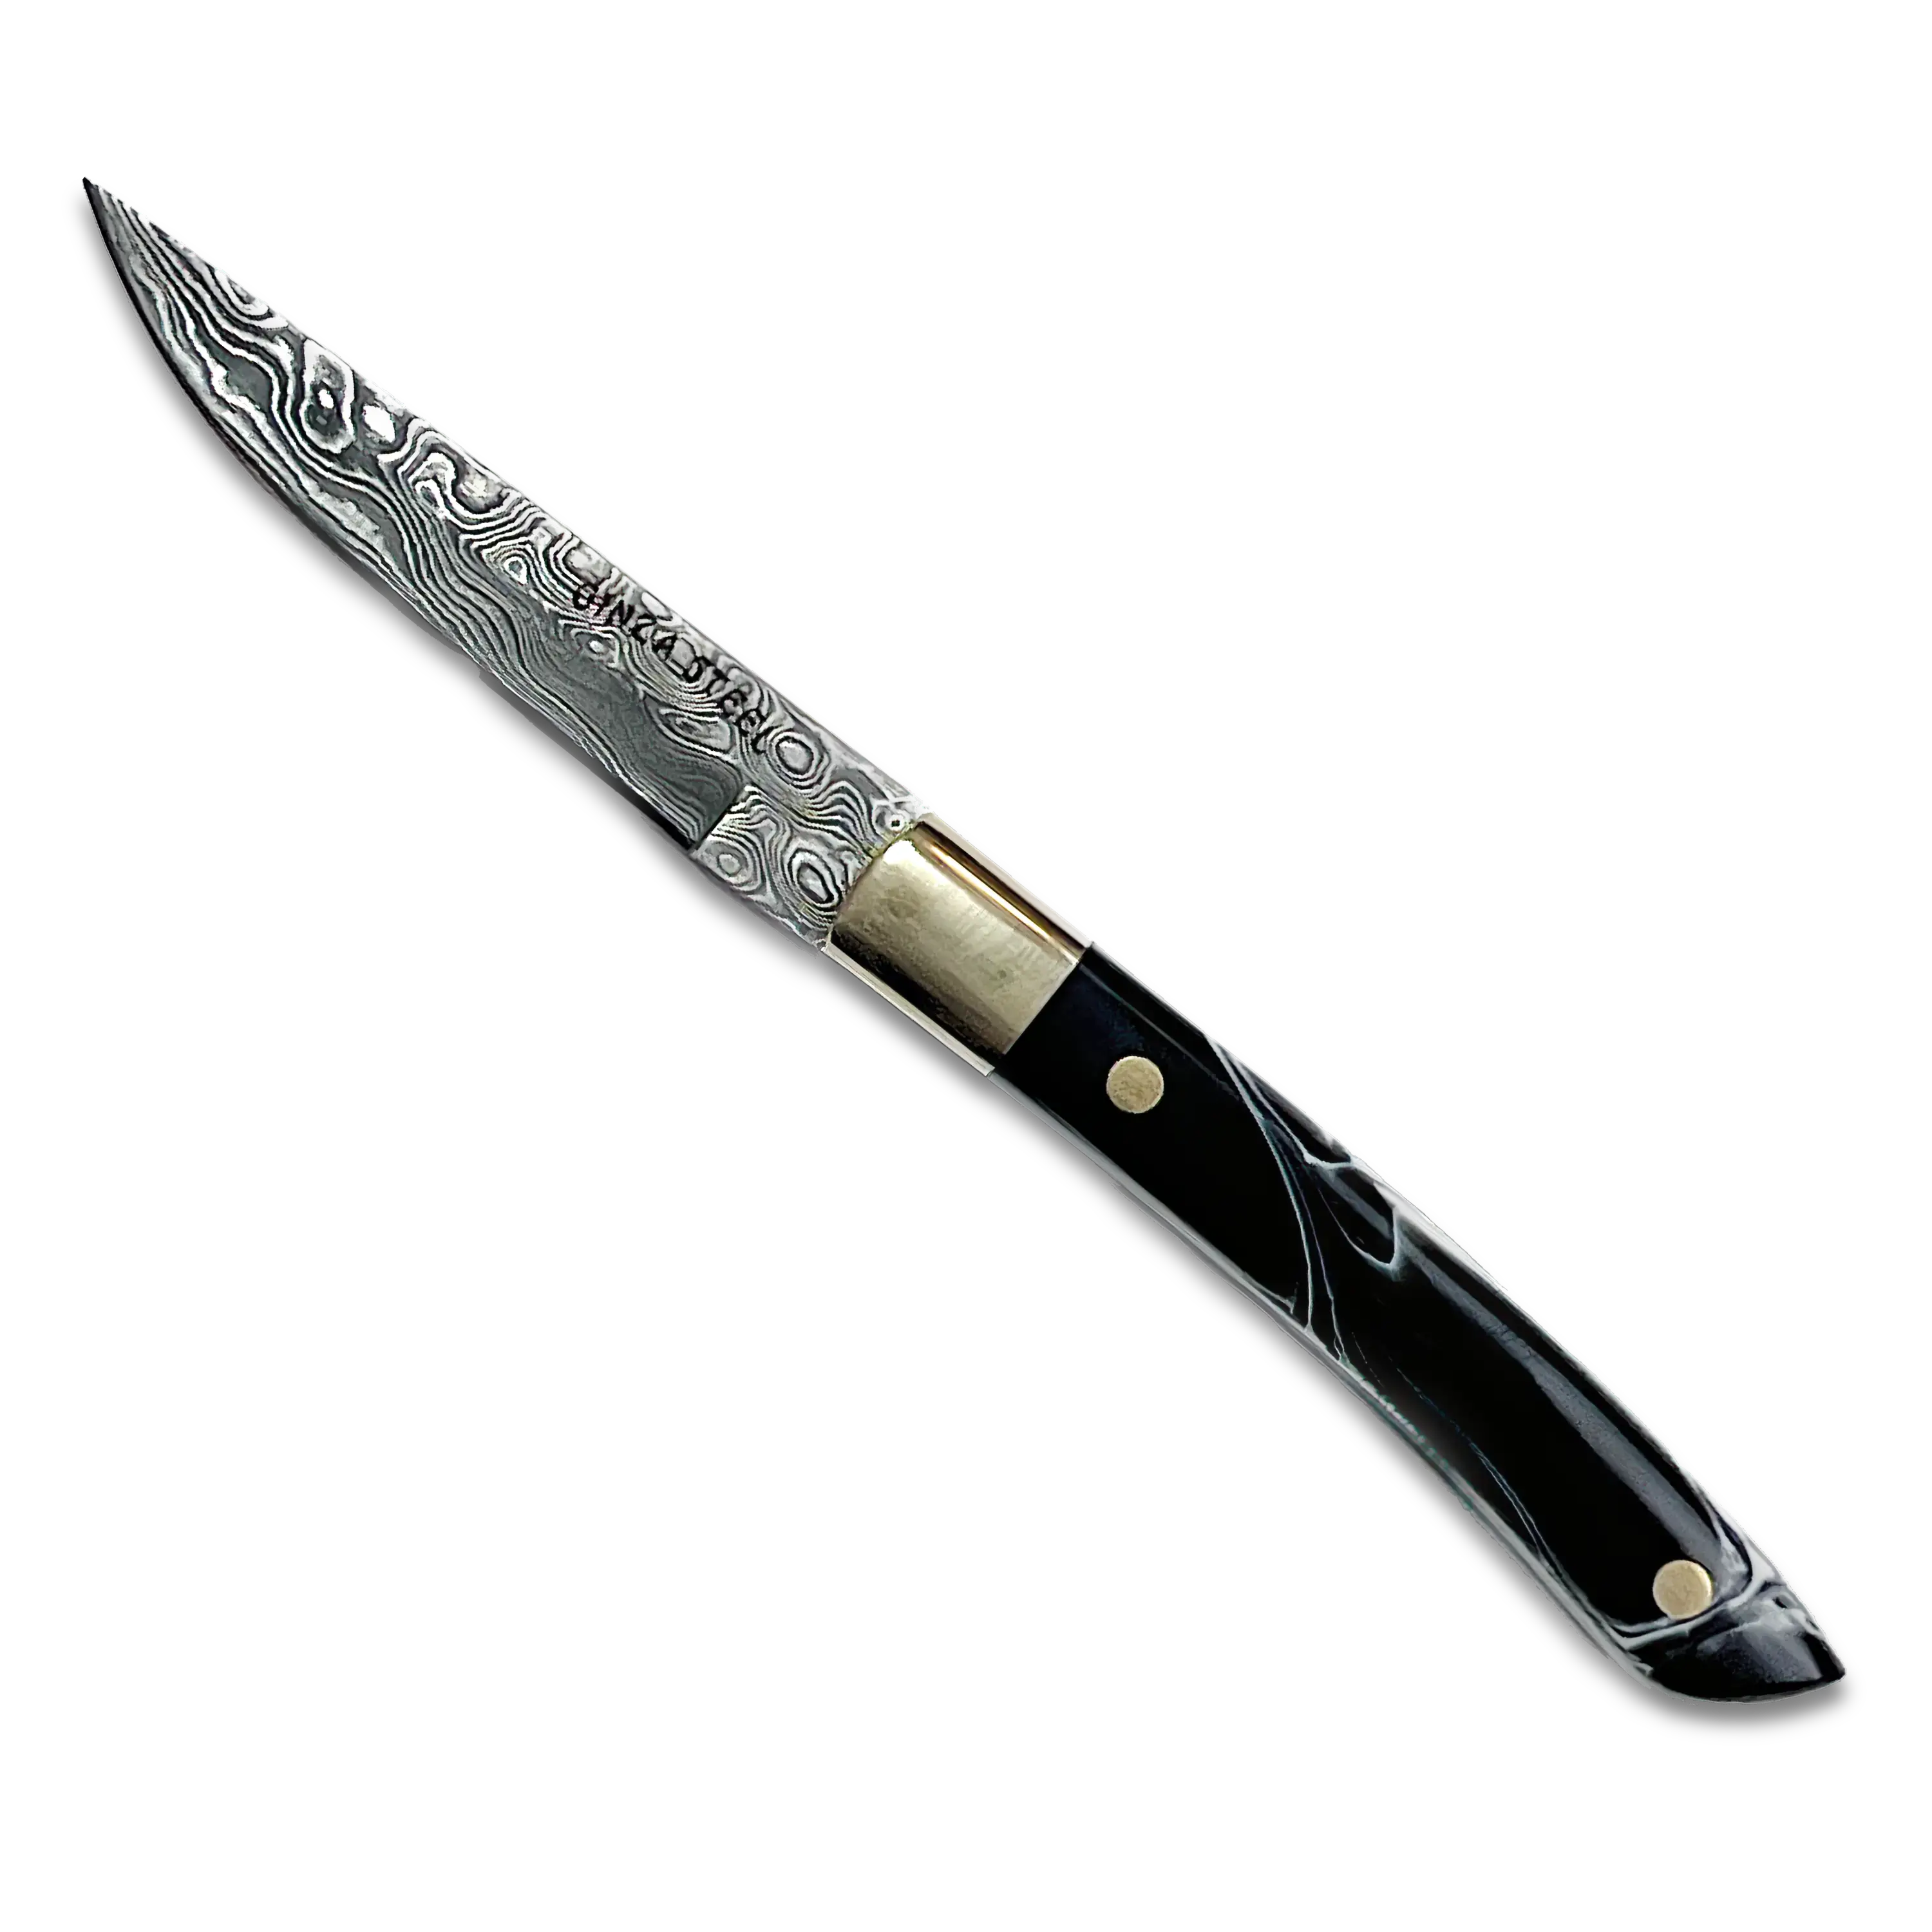 AKARI Skinner Black Knife 3.5 inch with Original Leather Sheath